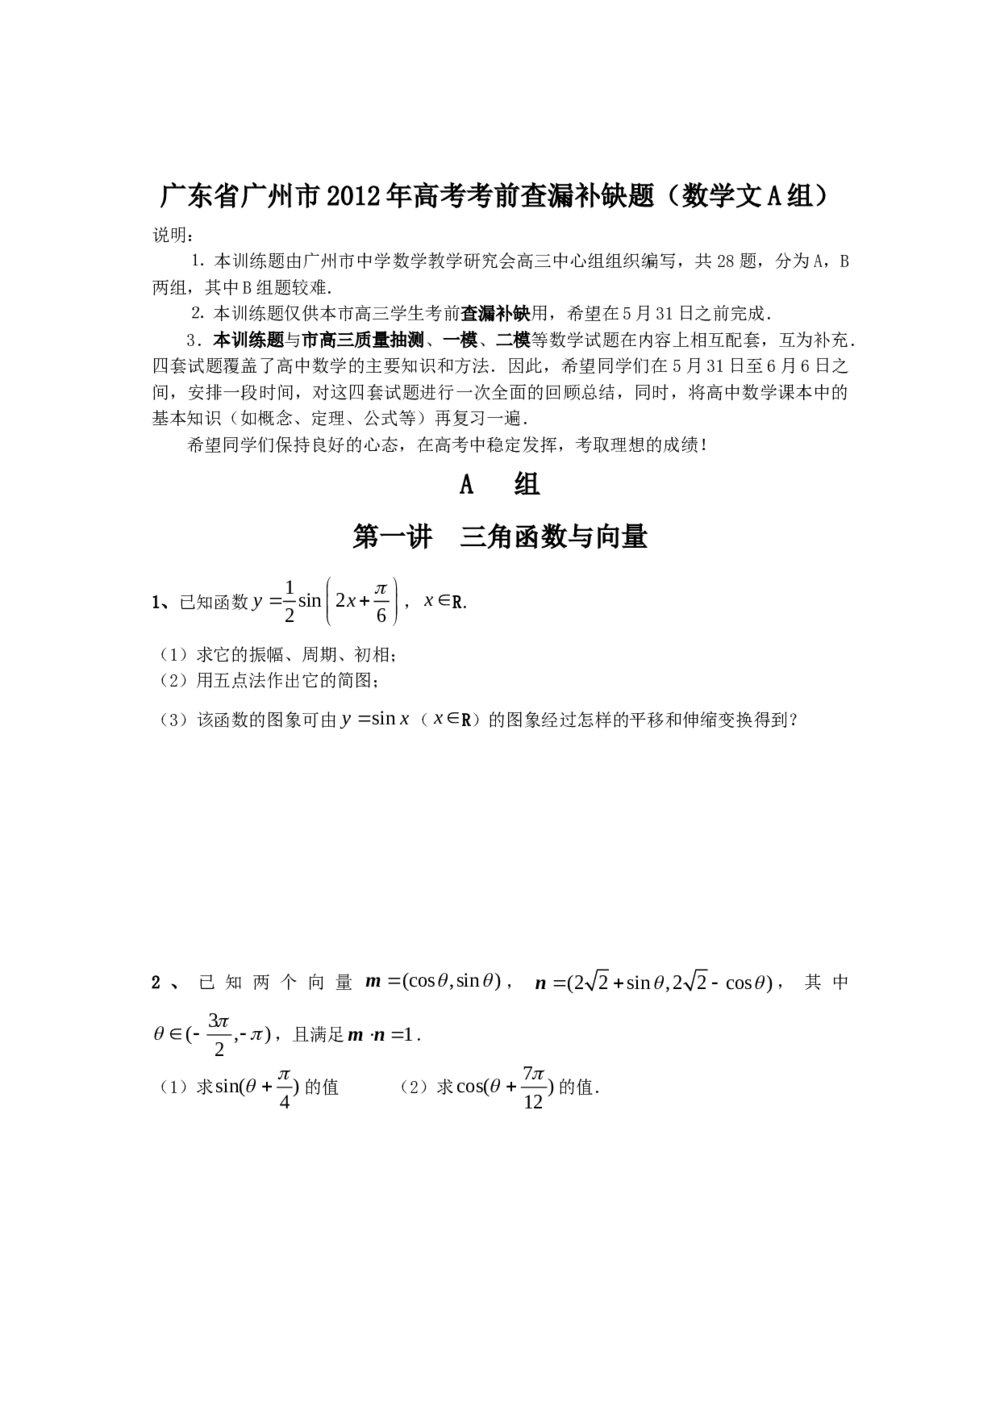 广东省广州市2012年高考考前查漏补缺题(数学文科A组)1